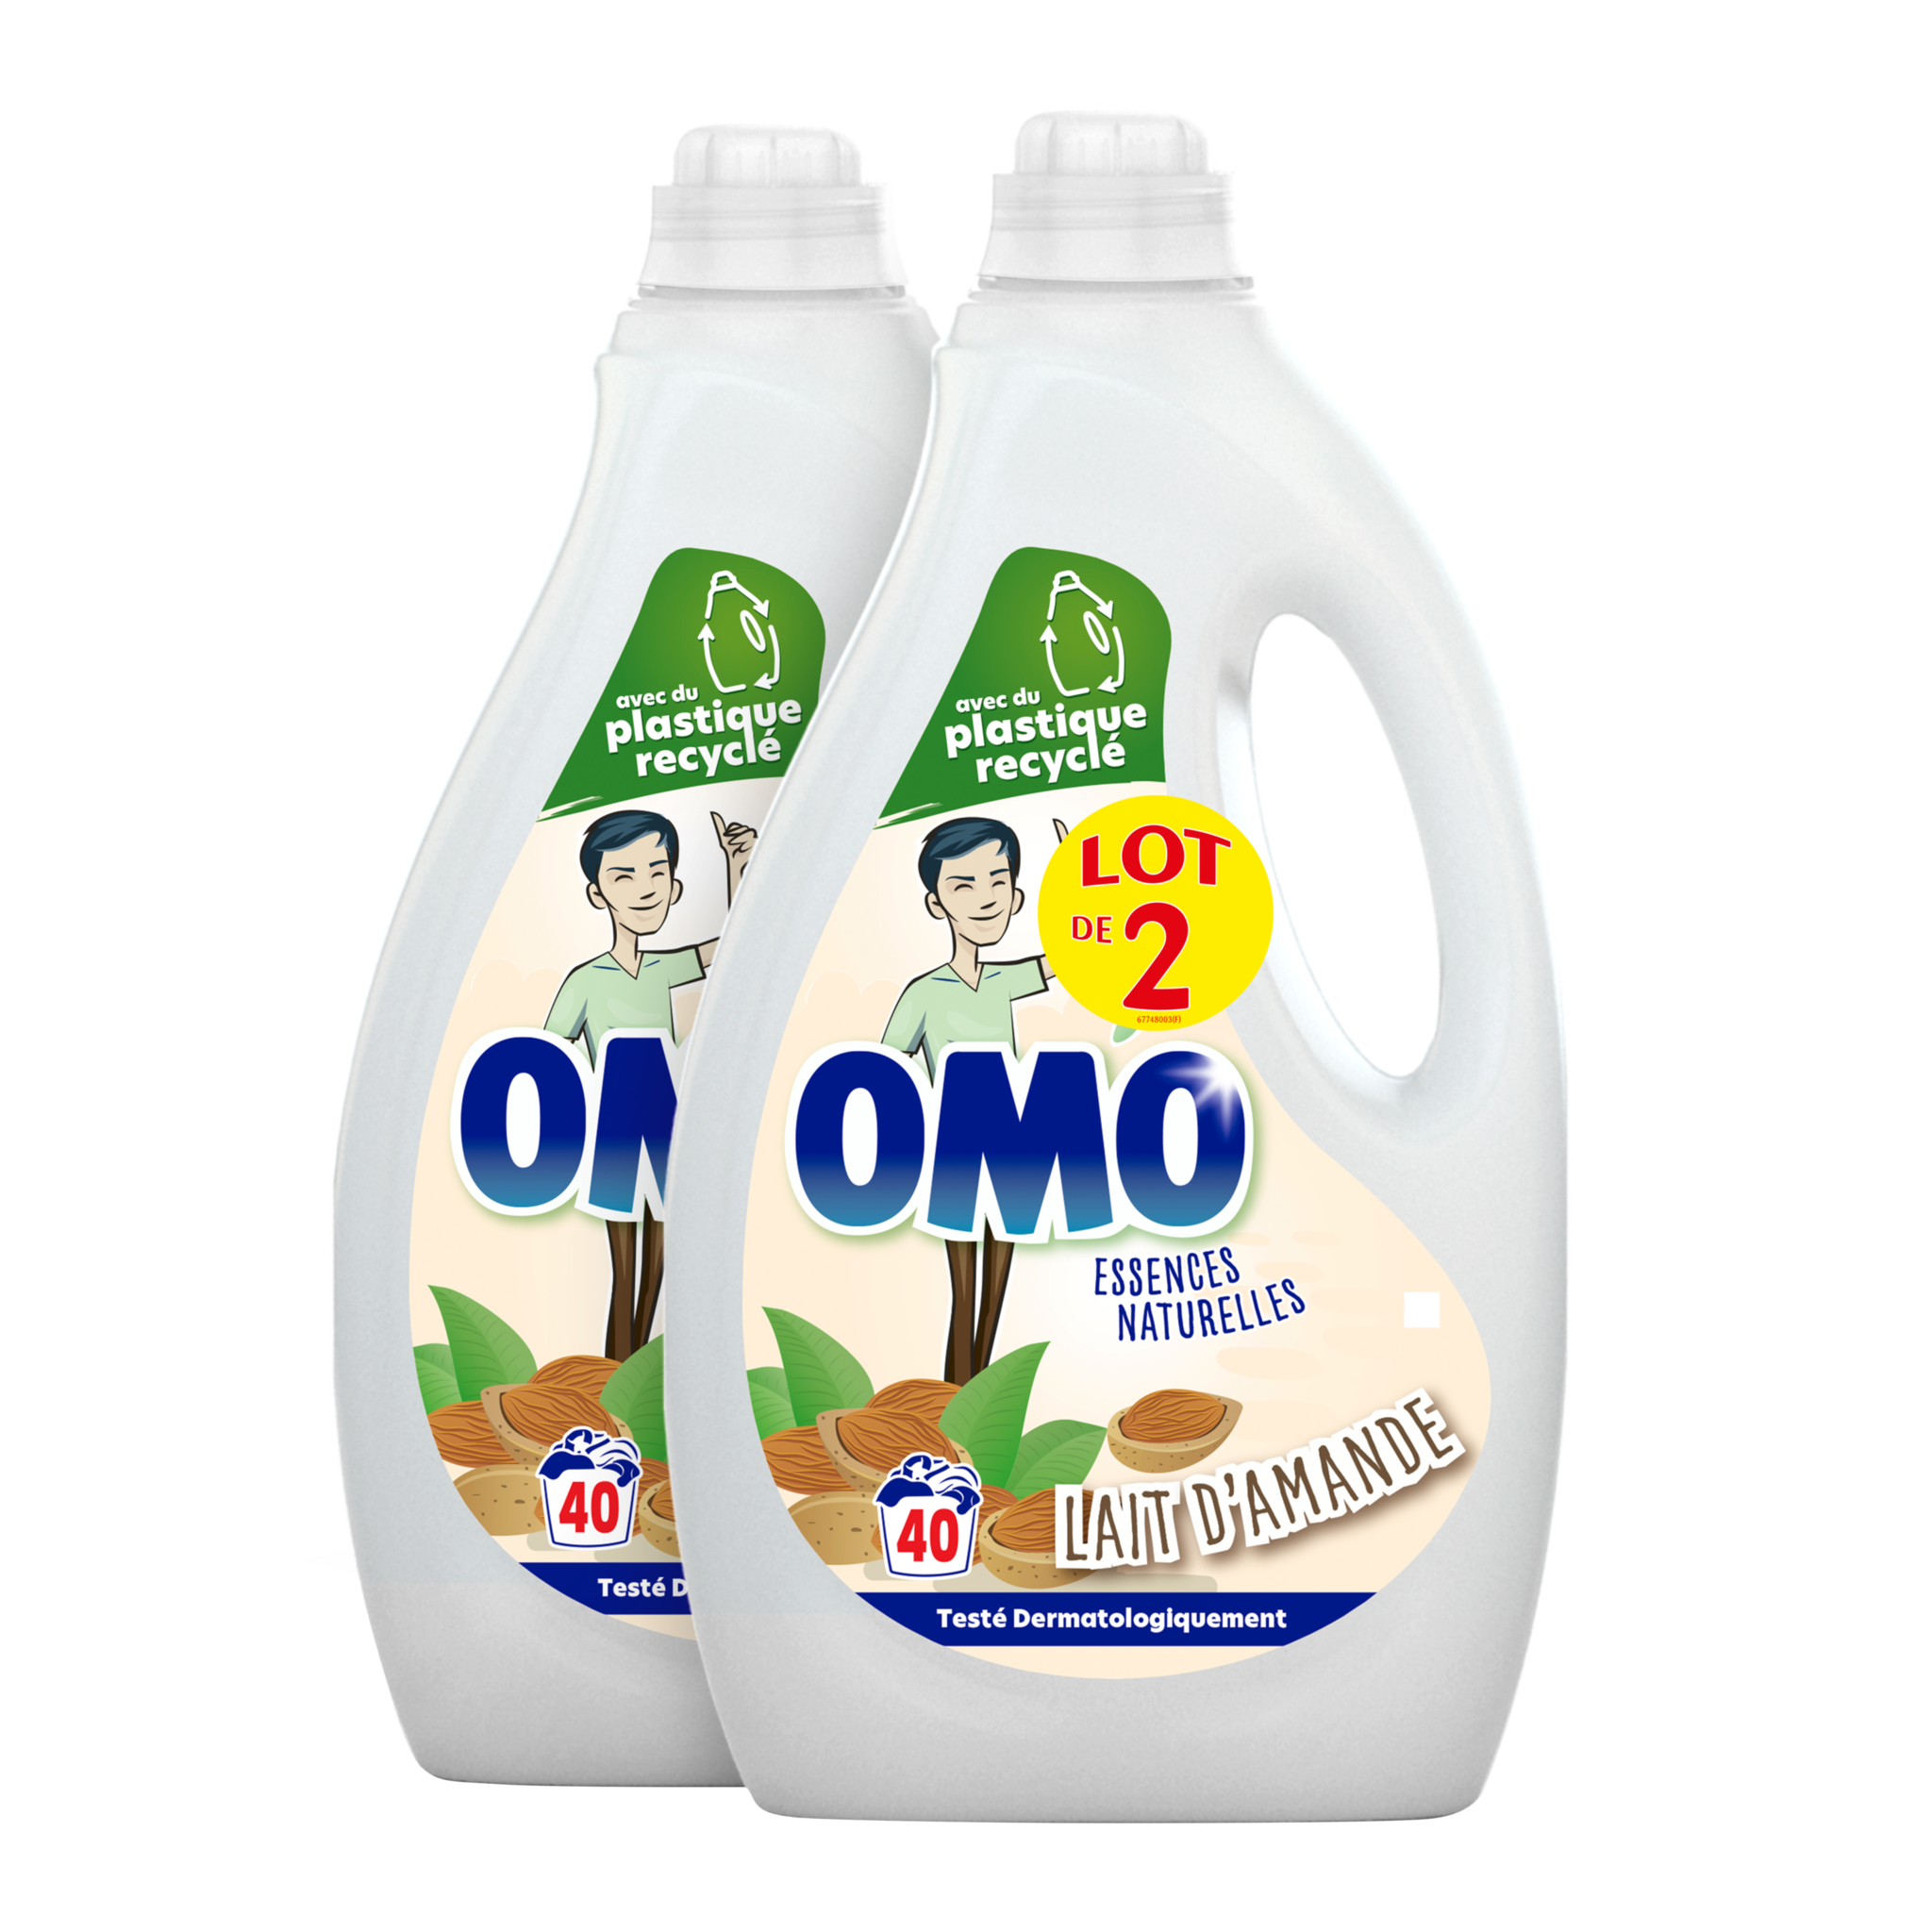 Promo Lessive Liquide Omo chez E.Leclerc